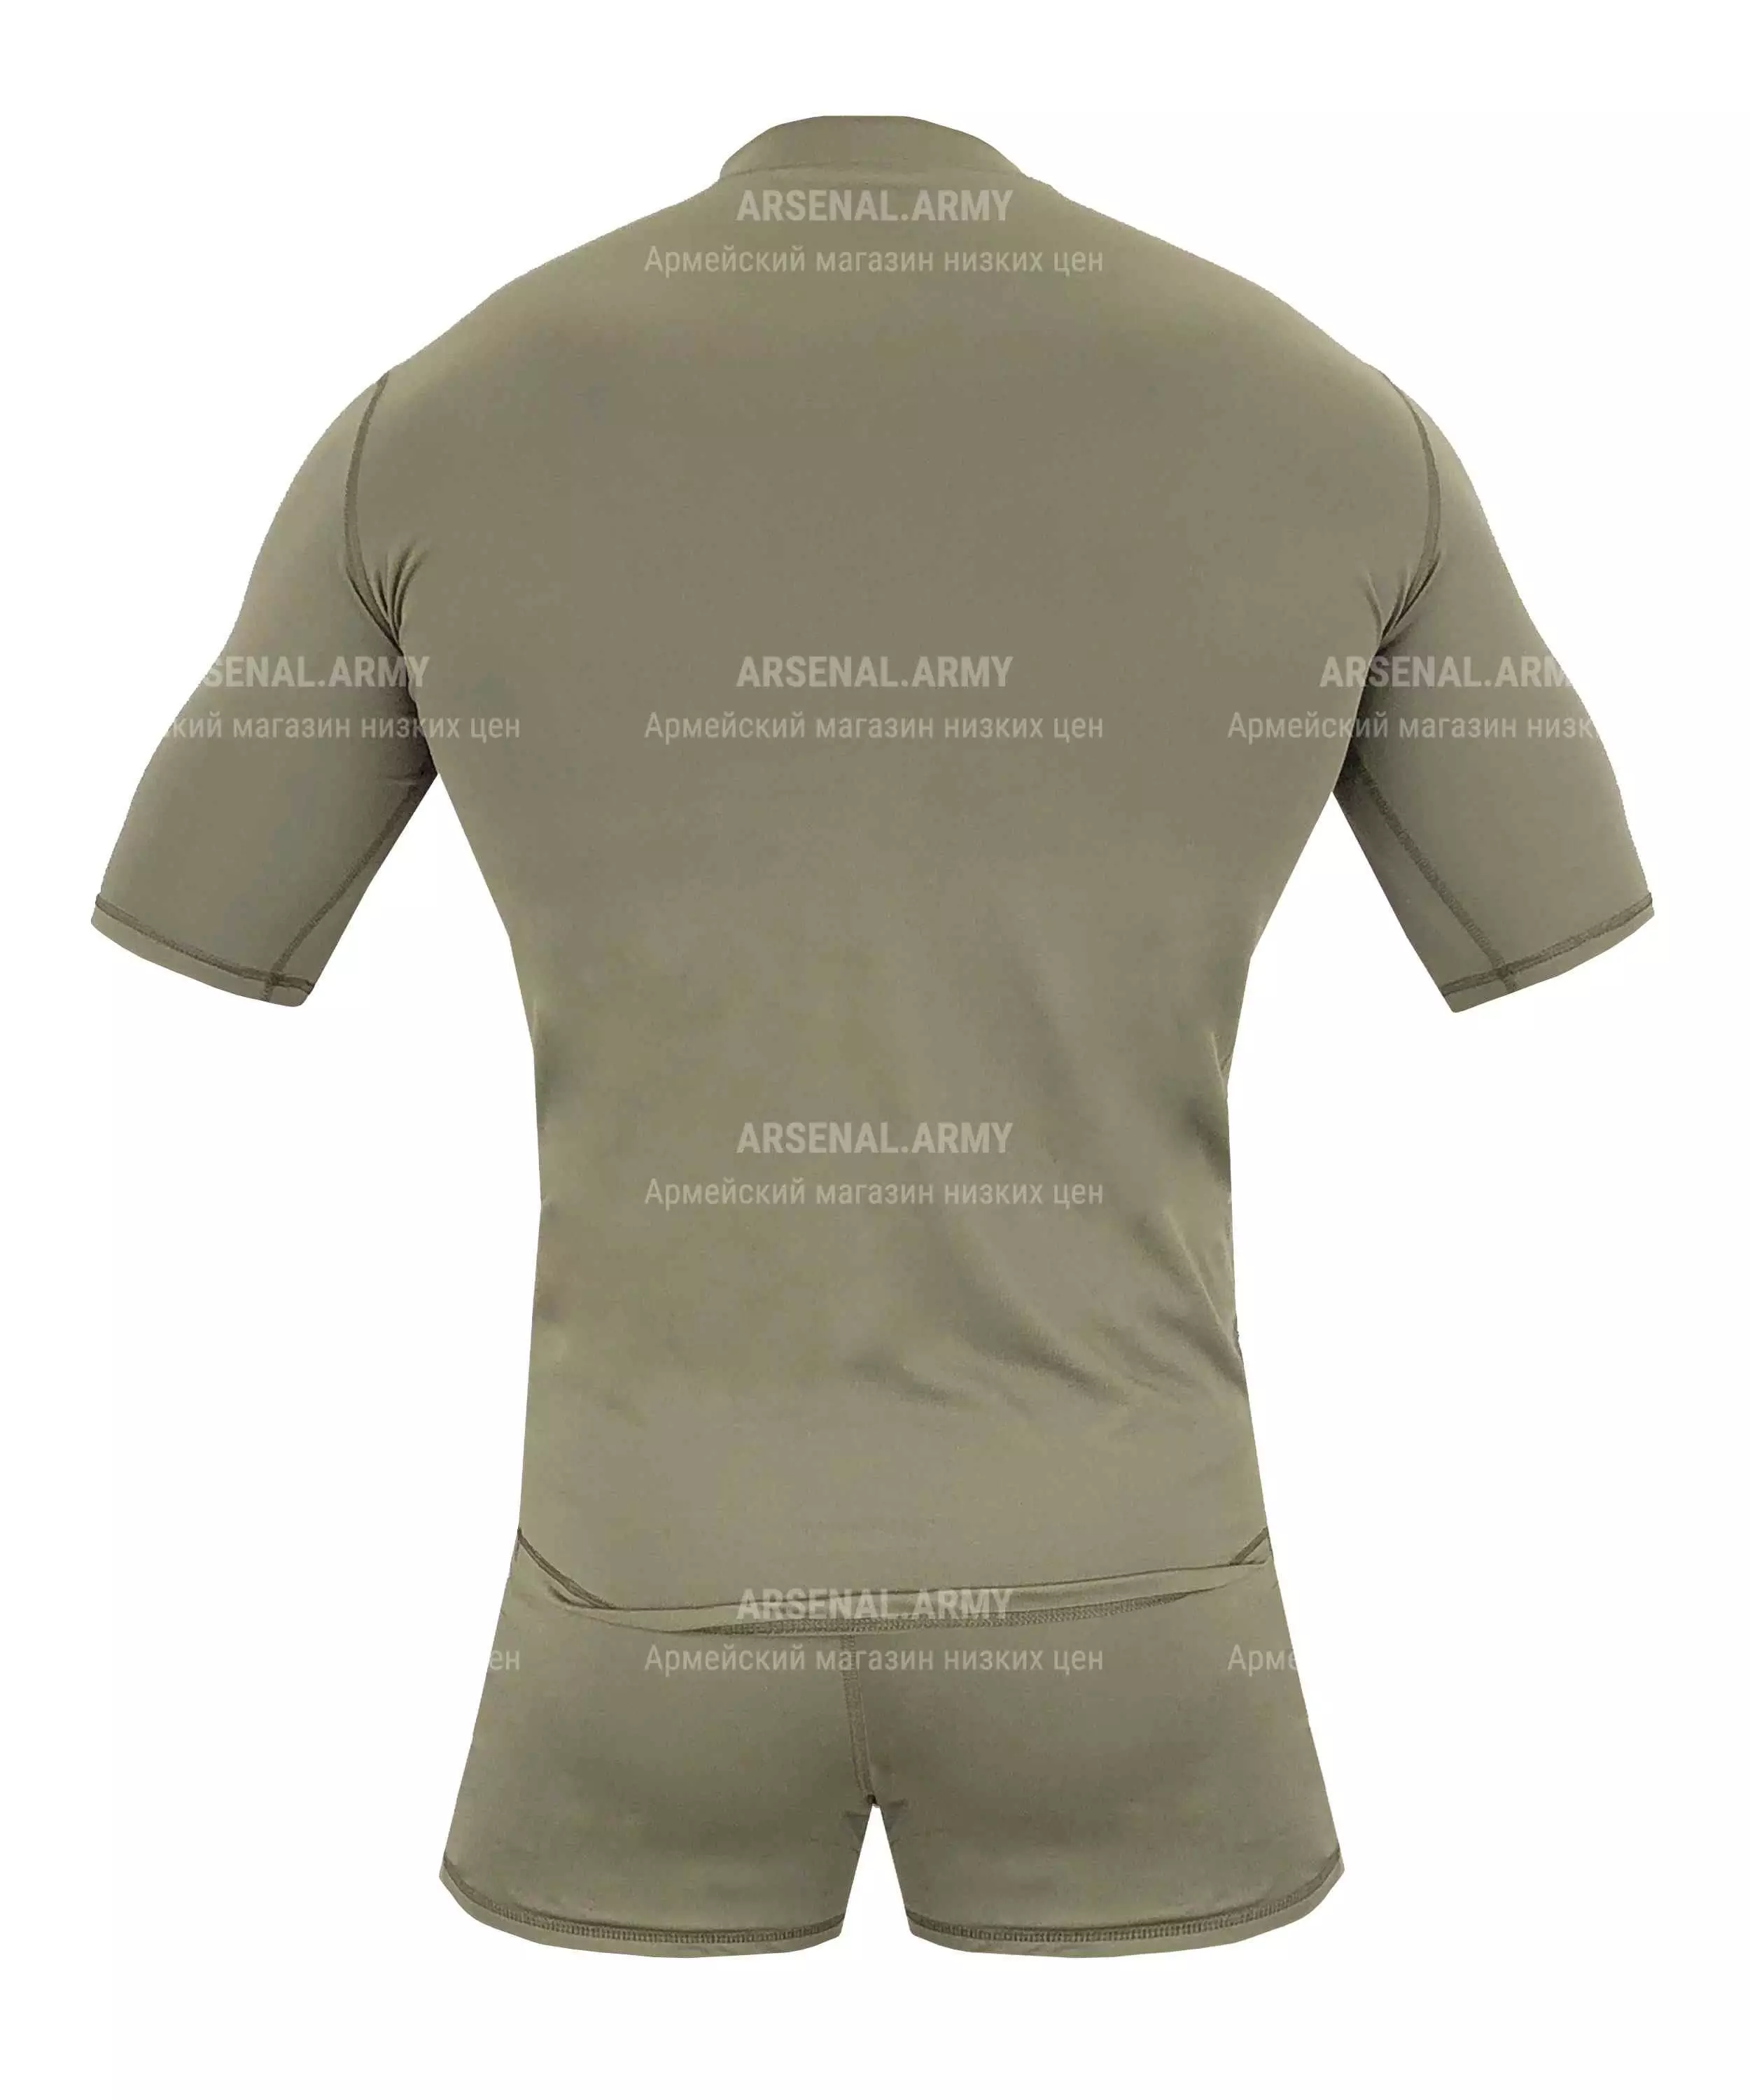 Комплект белья ВКБО футболка + трусы — 2